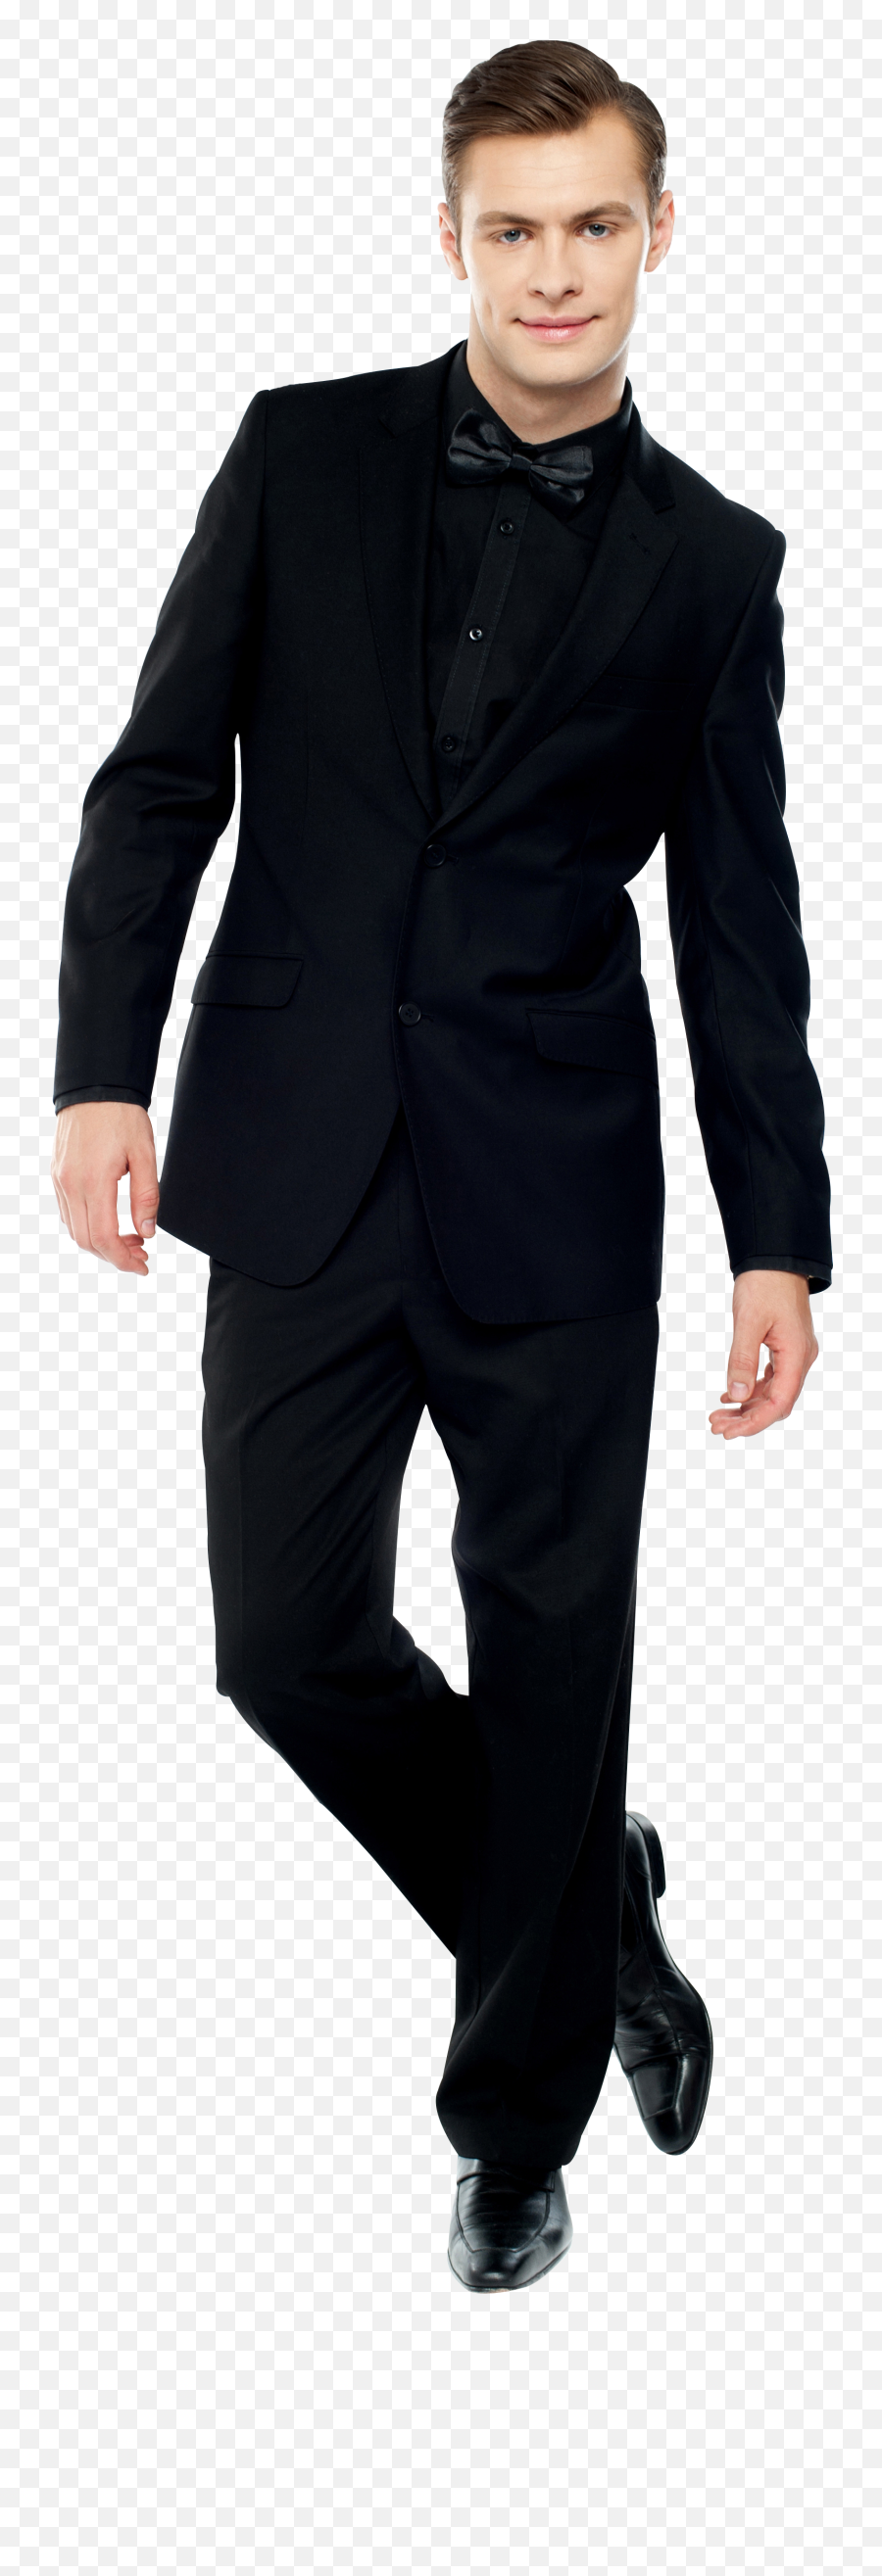 Men In Suit Png Image - Standing Emoji,Suit Png